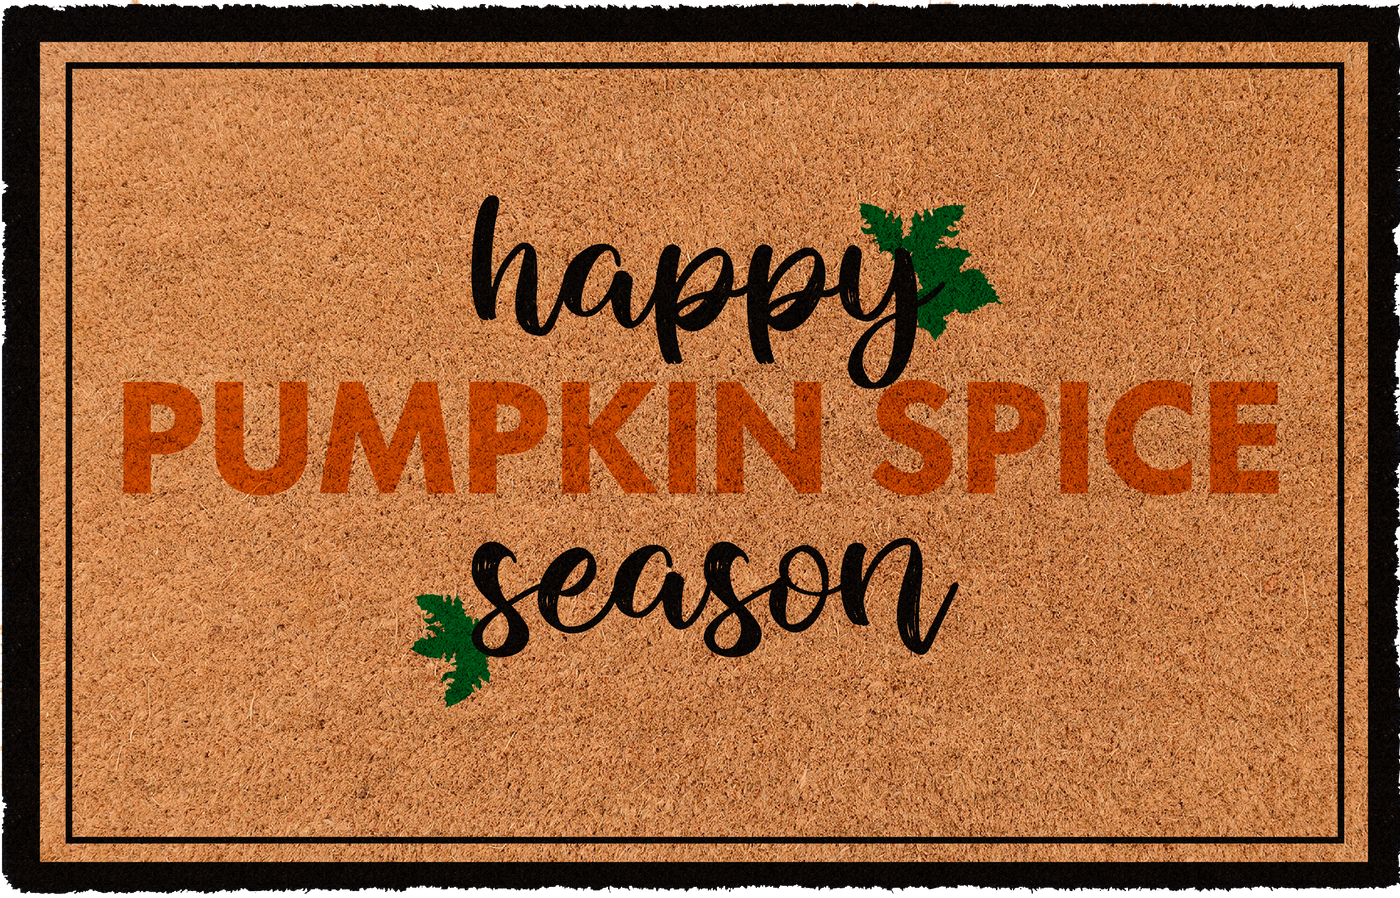 Happy Pumpkin Spice Season | Coco Mats N More